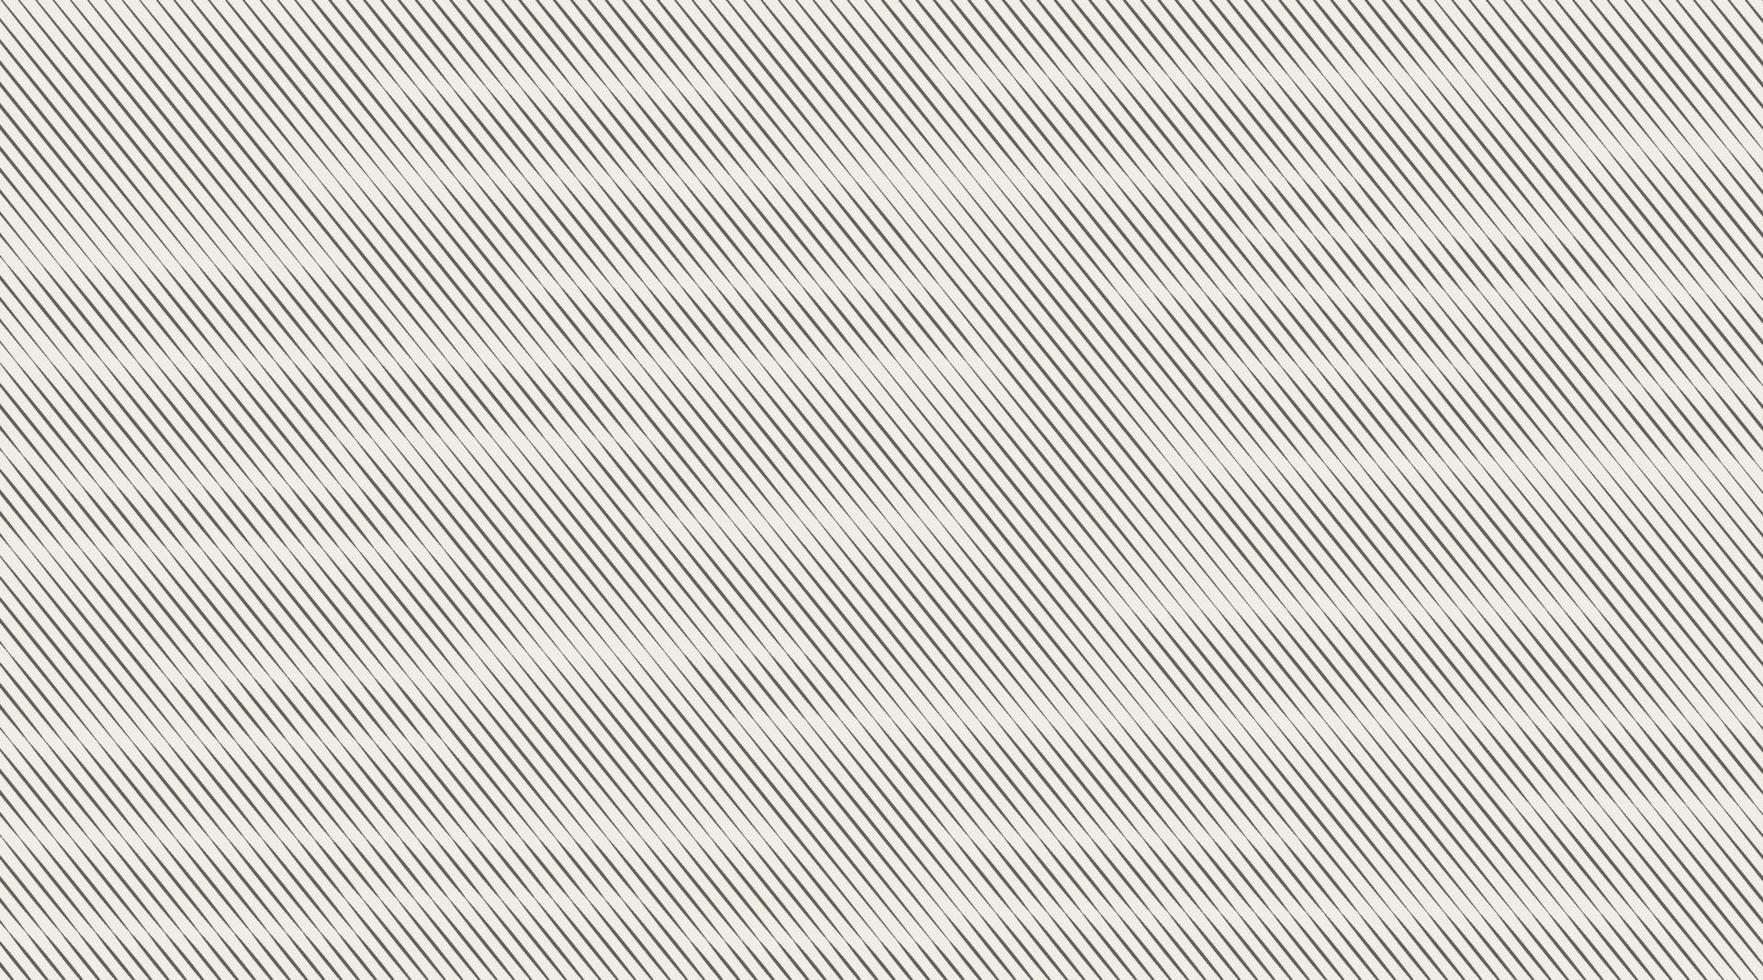 abstrakt mjuk grå lutning med diagonala randiga linjer mönster texturerat bakgrund, modern och minimal mall med kopia utrymme. vektor illustration